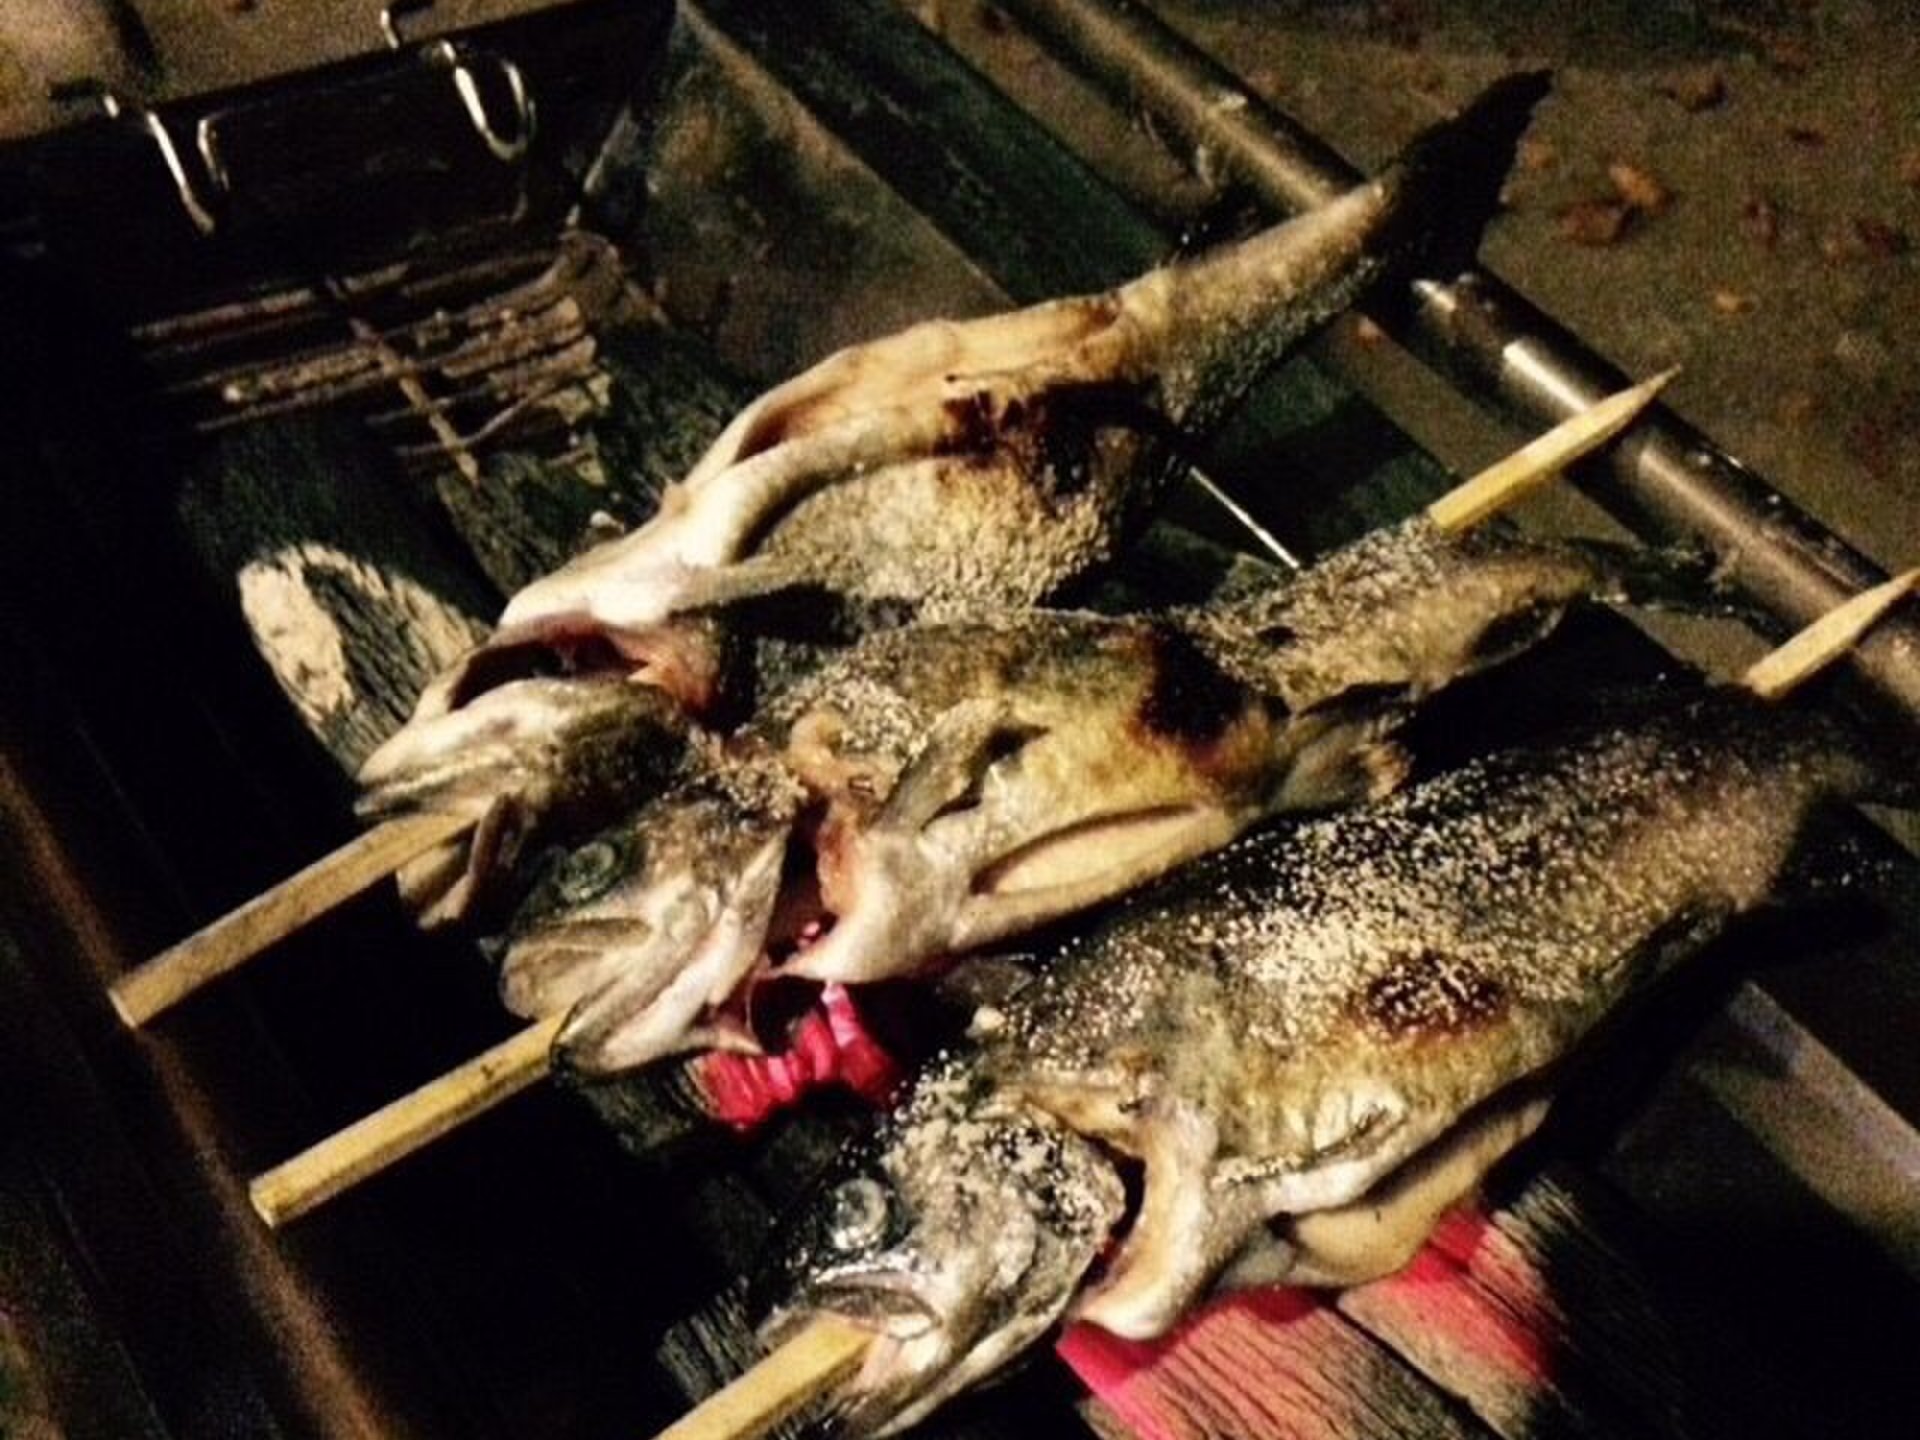 【早戸川&相模湖】船でしかいけない「みの石滝キャンプ場」で、にじますの炭火BBQを贅沢に味わいつくす